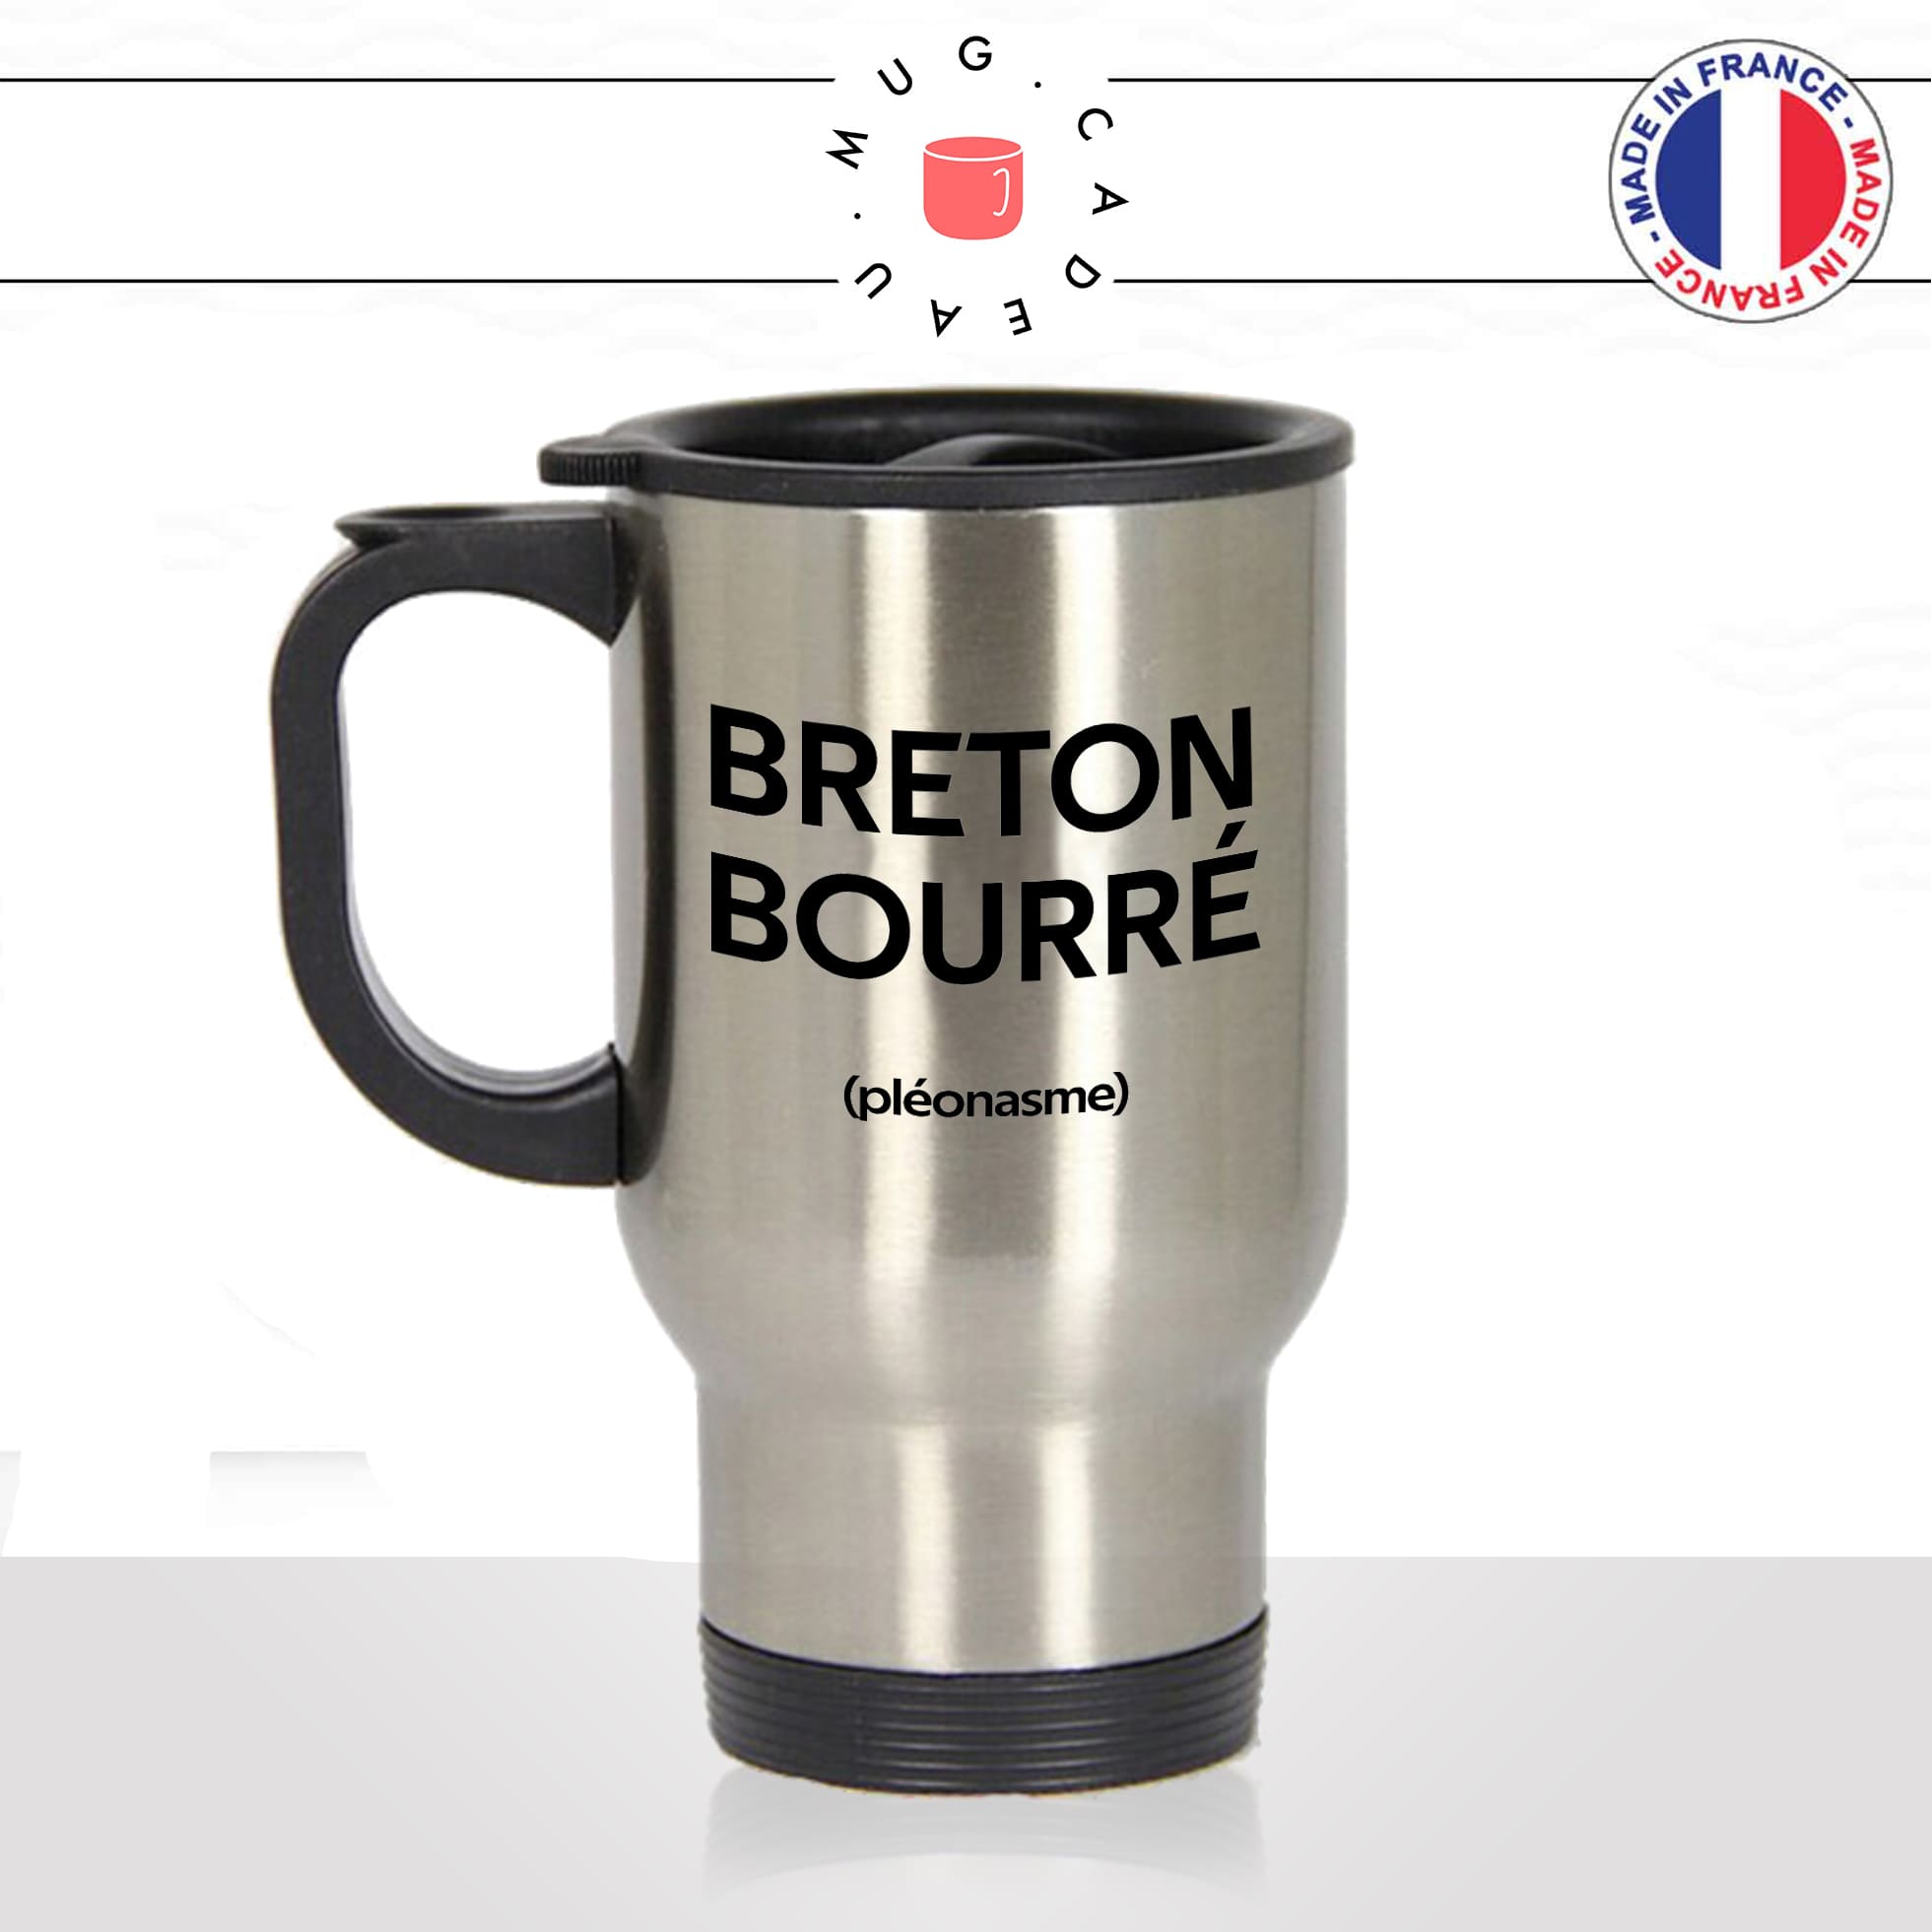 mug-tasse-thermos-isotherme-voyage-breton-bourré-pleonasme-apéro-biere-alcool-bretagne-france-copains-vin-humour-fun-idée-cadeau-original